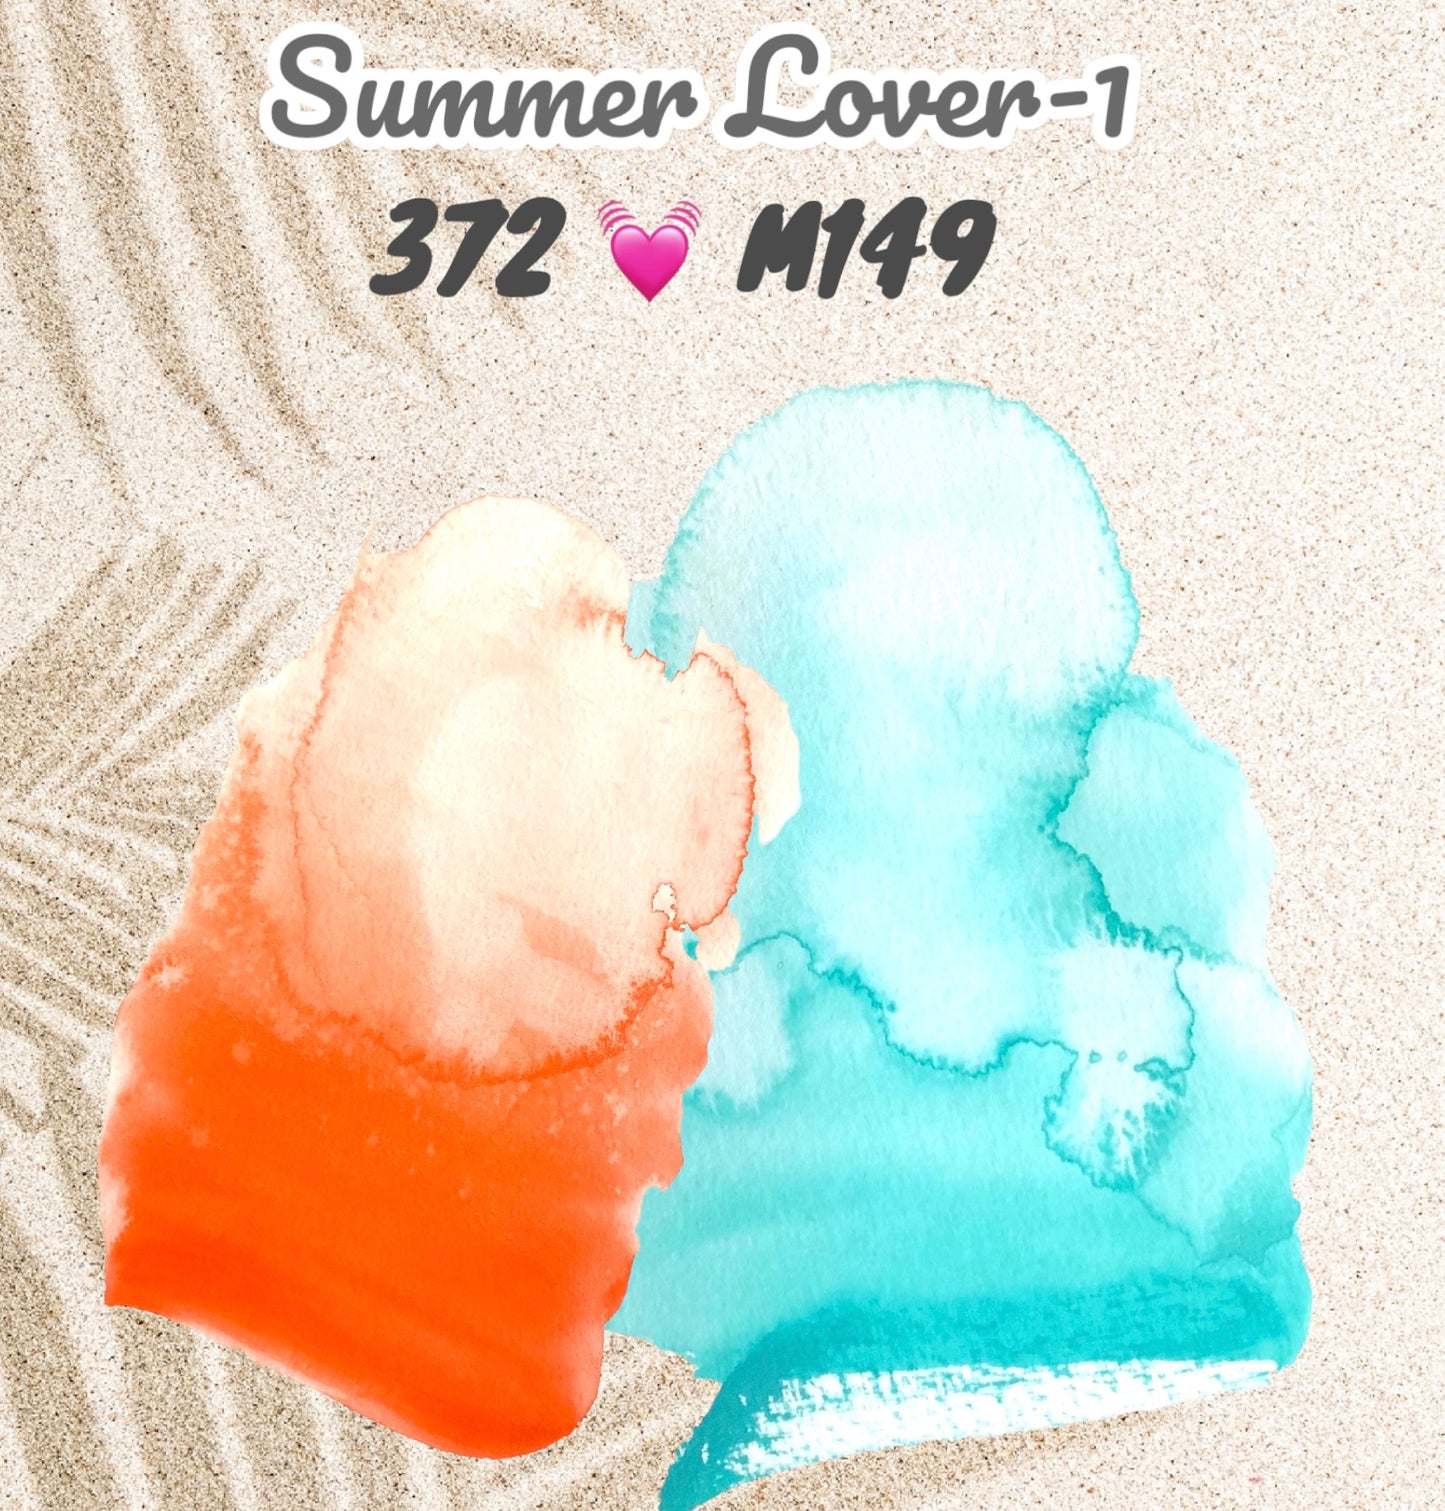 Summer Lover 1